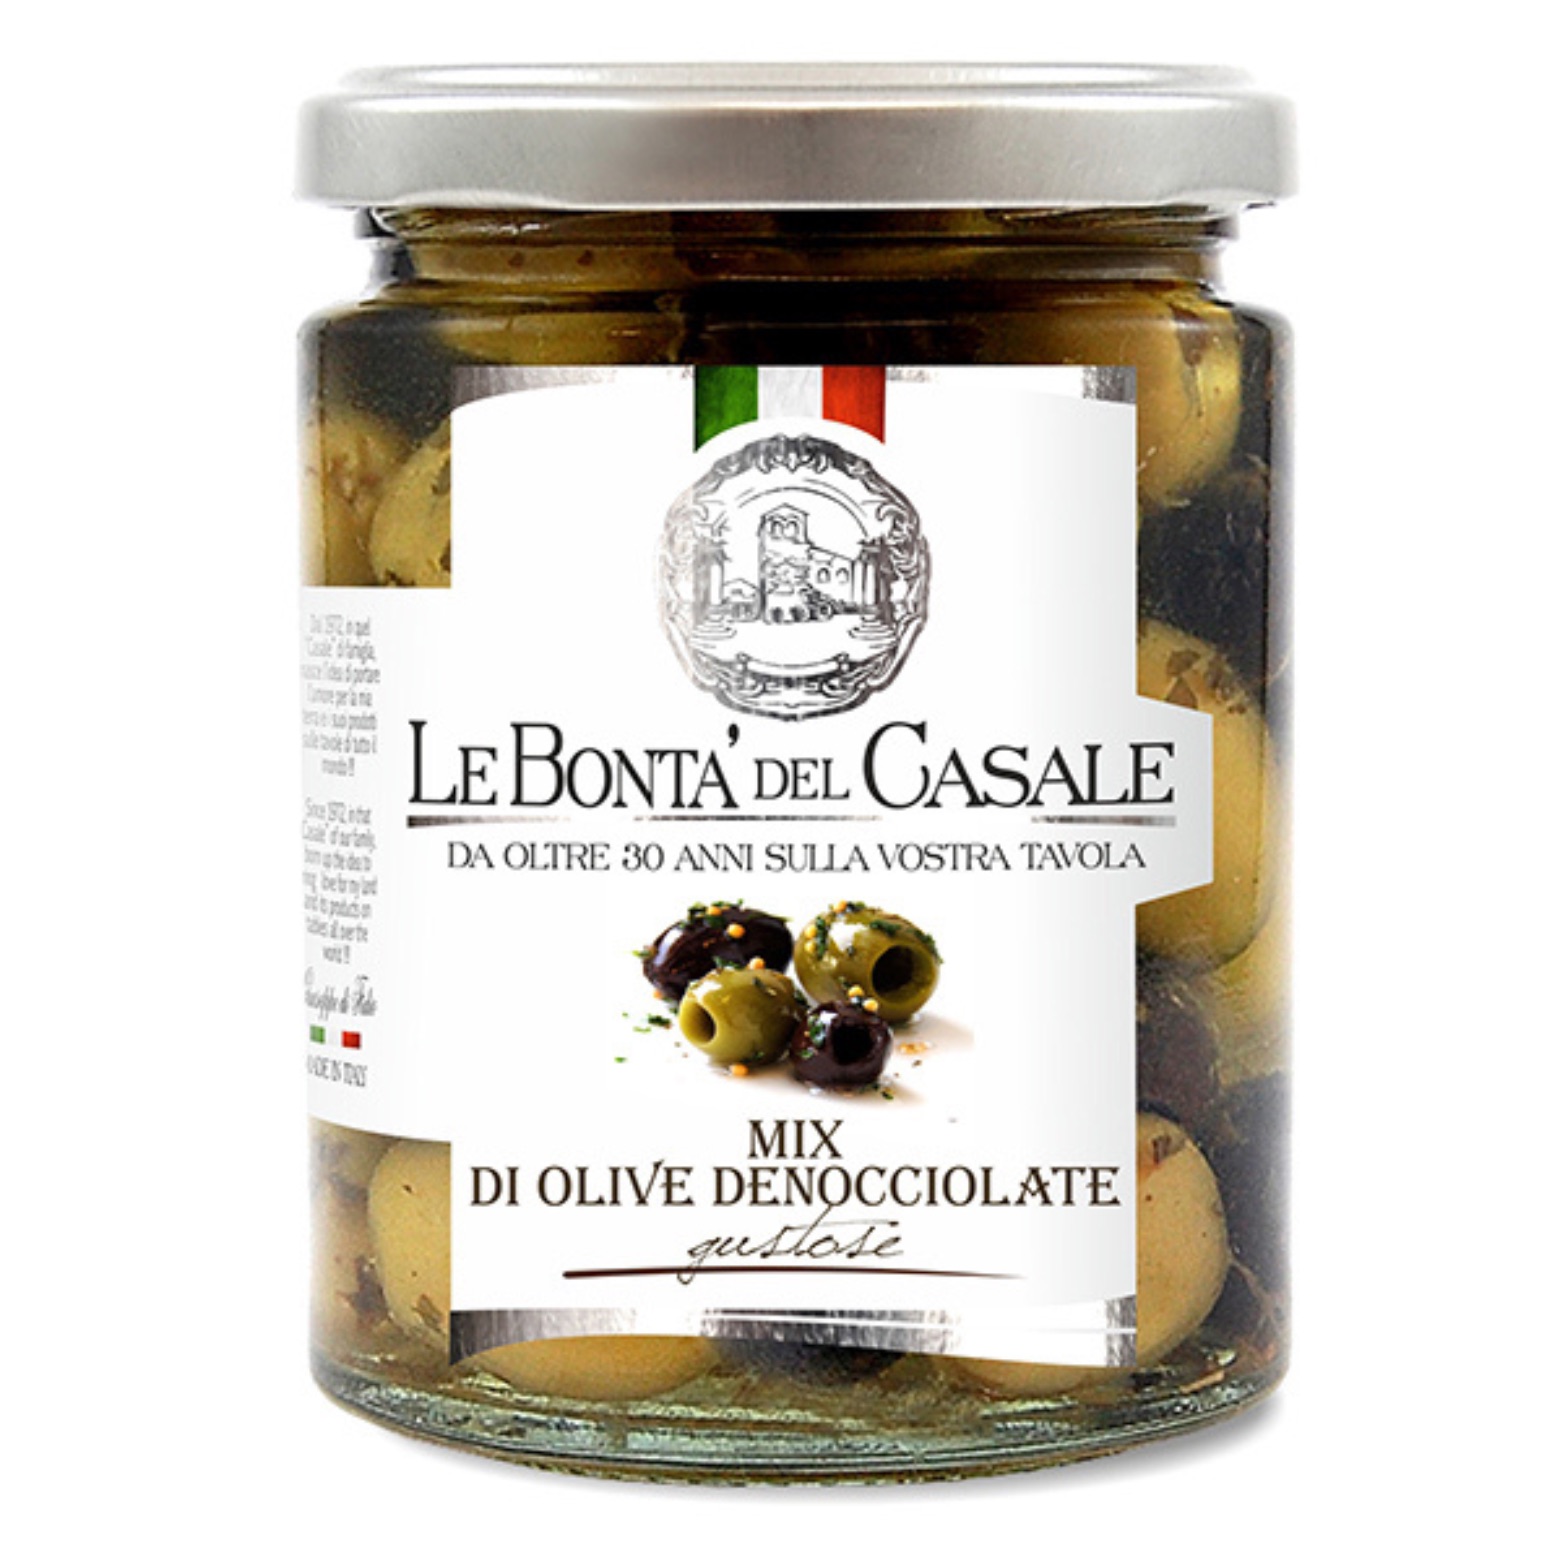 Mix von entsteinten Oliven 314ml.